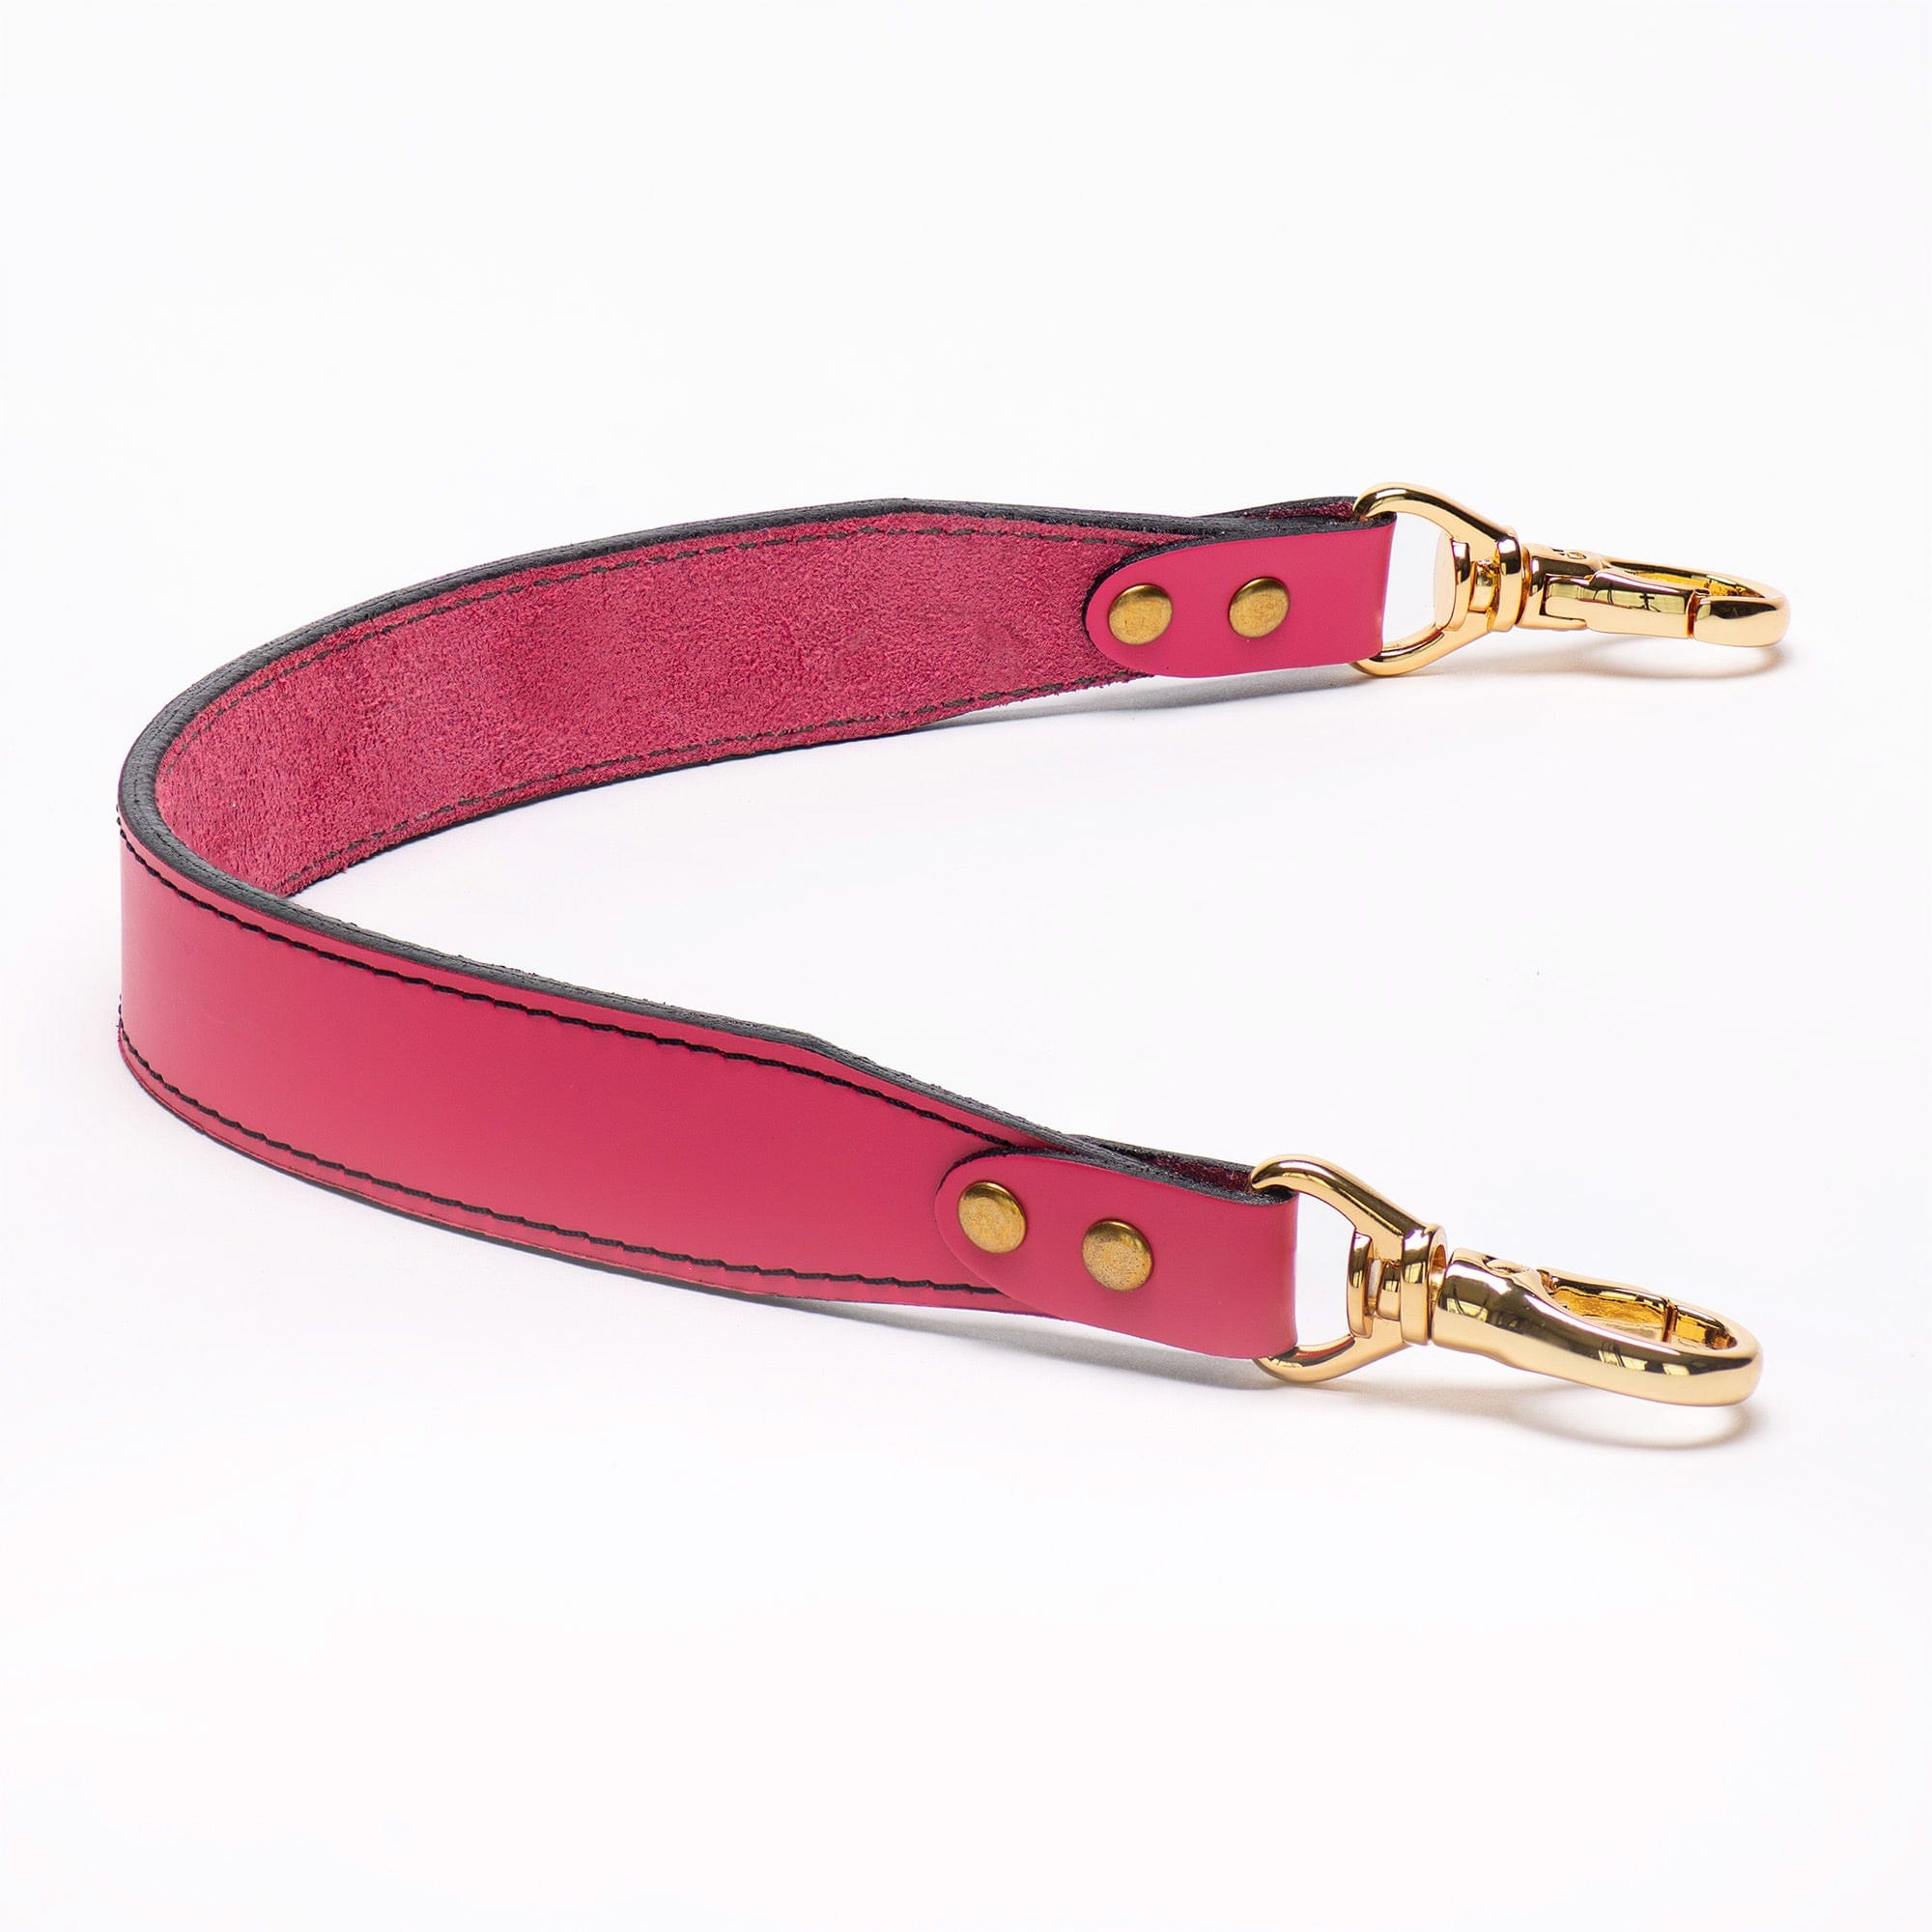 Rebecca Minkoff Bree Suede Satchel Bag Blush Rose Pink Leather Purse Handbag  Med | eBay